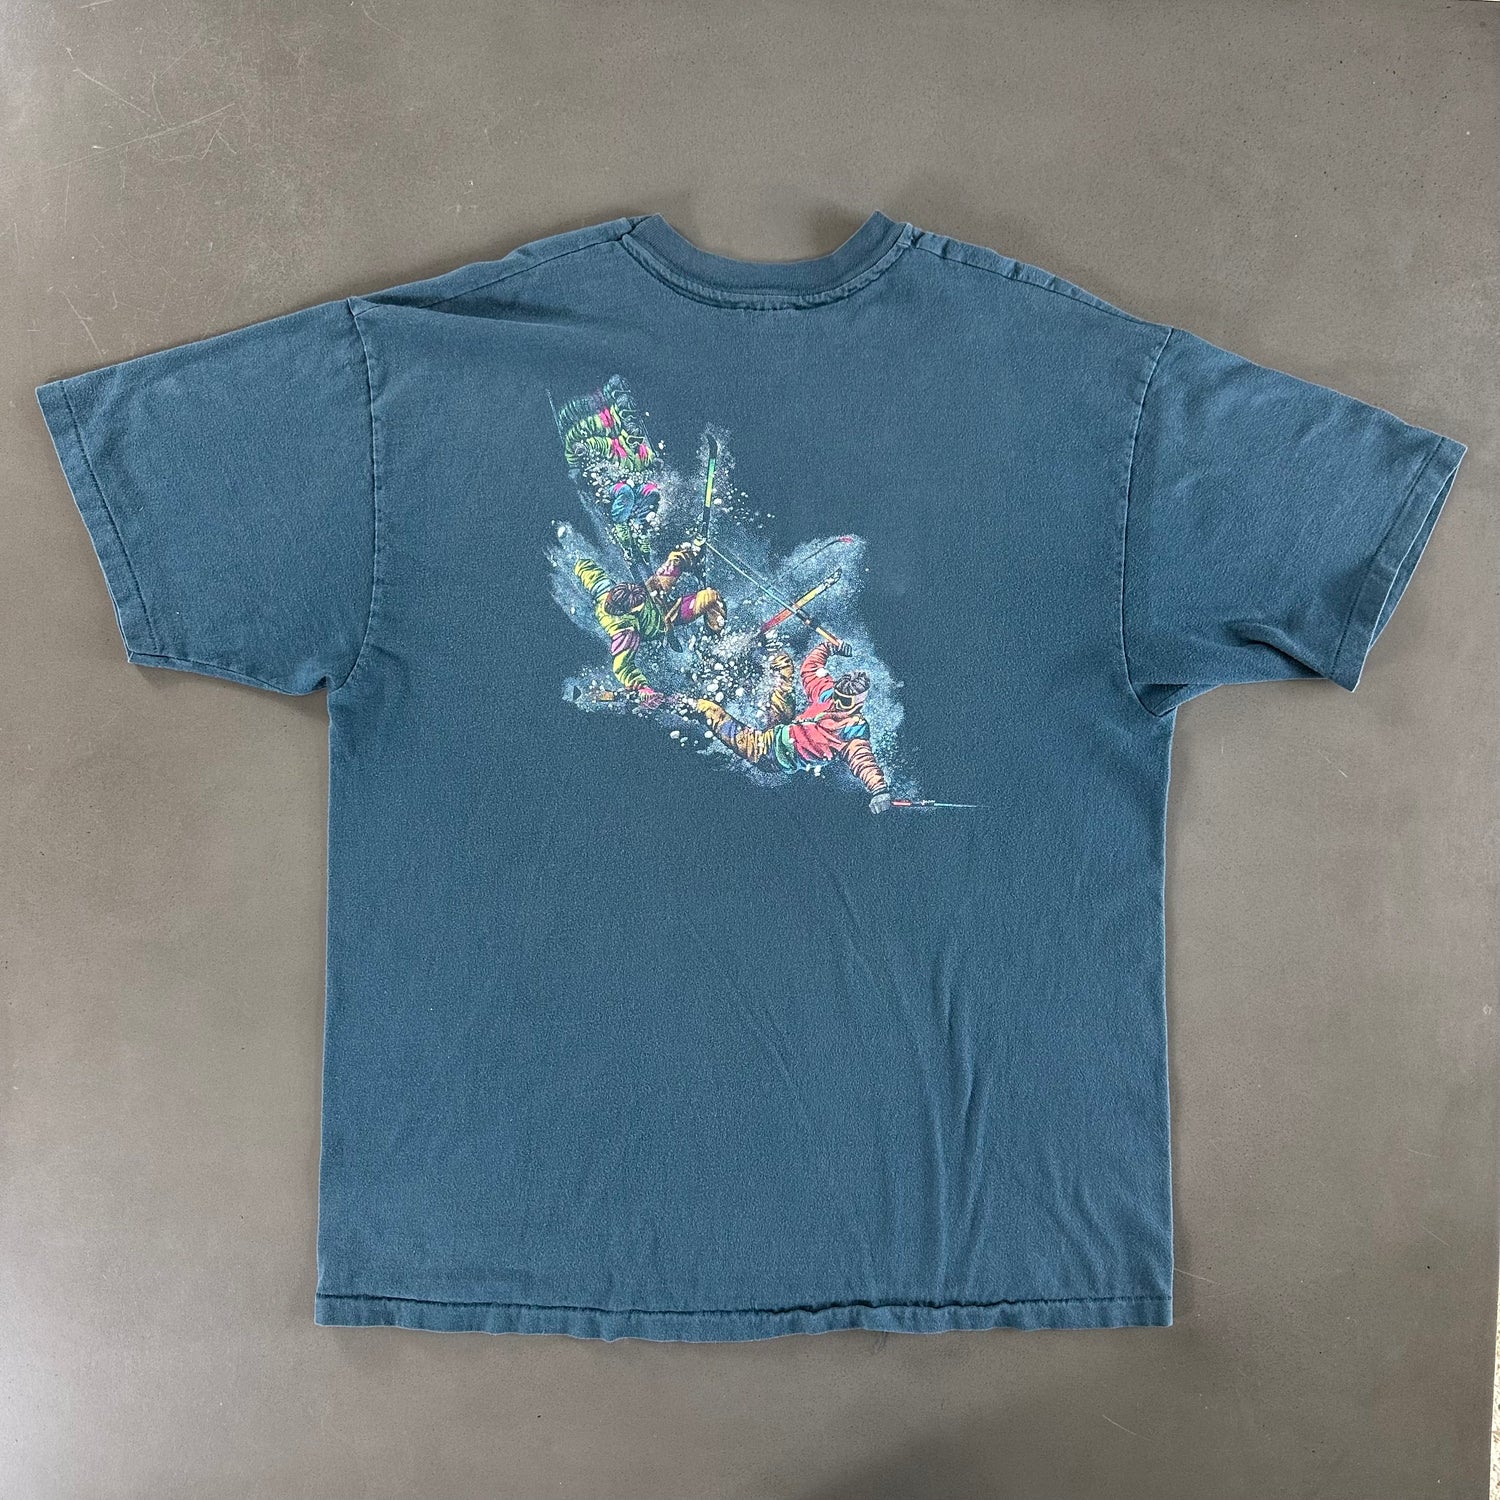 Vintage 1990s Ski T-shirt size XL